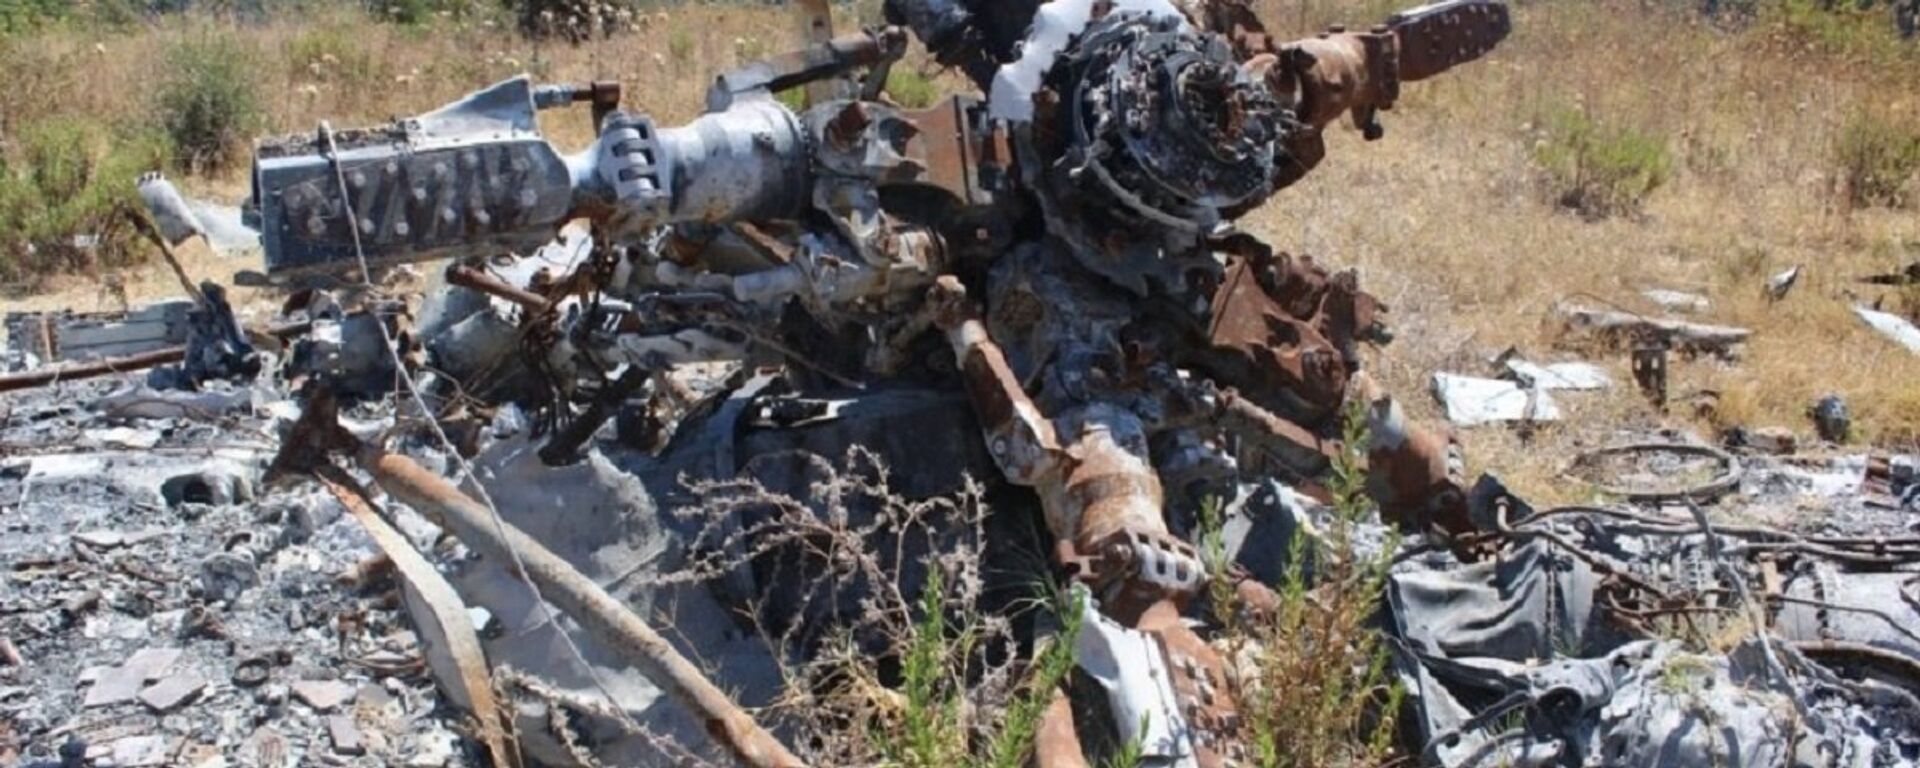 لجنة التحقيق تنشر صورا من موقع تحطم الطائرة سو-24إم في سوريا - سبوتنيك عربي, 1920, 23.11.2018